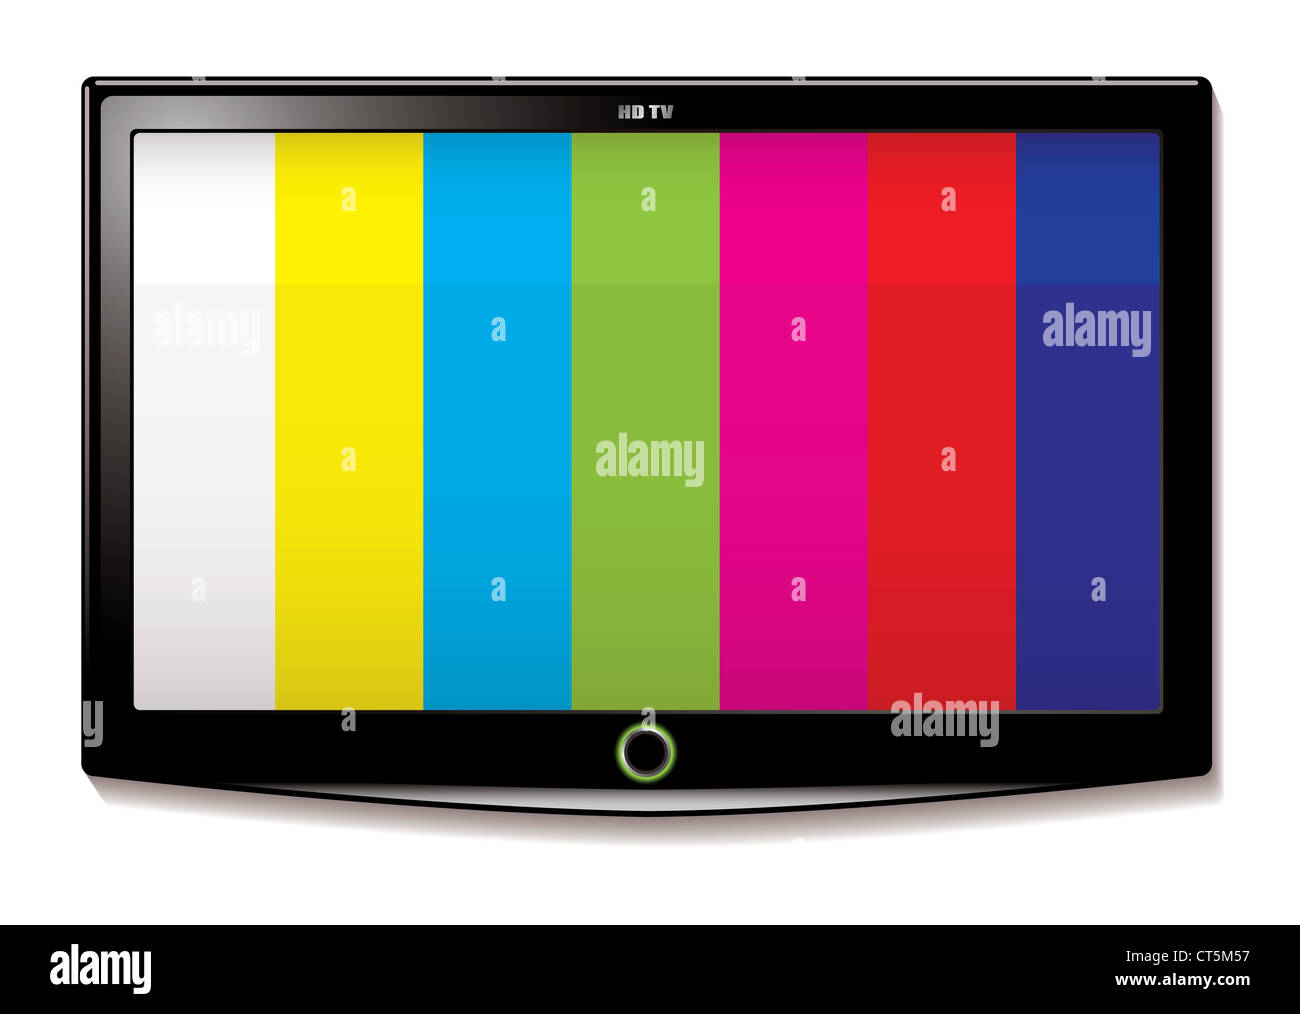 Streifen-Test-Bildschirm auf moderne LCD-Fernseher an der Wand montiert  Stockfotografie - Alamy